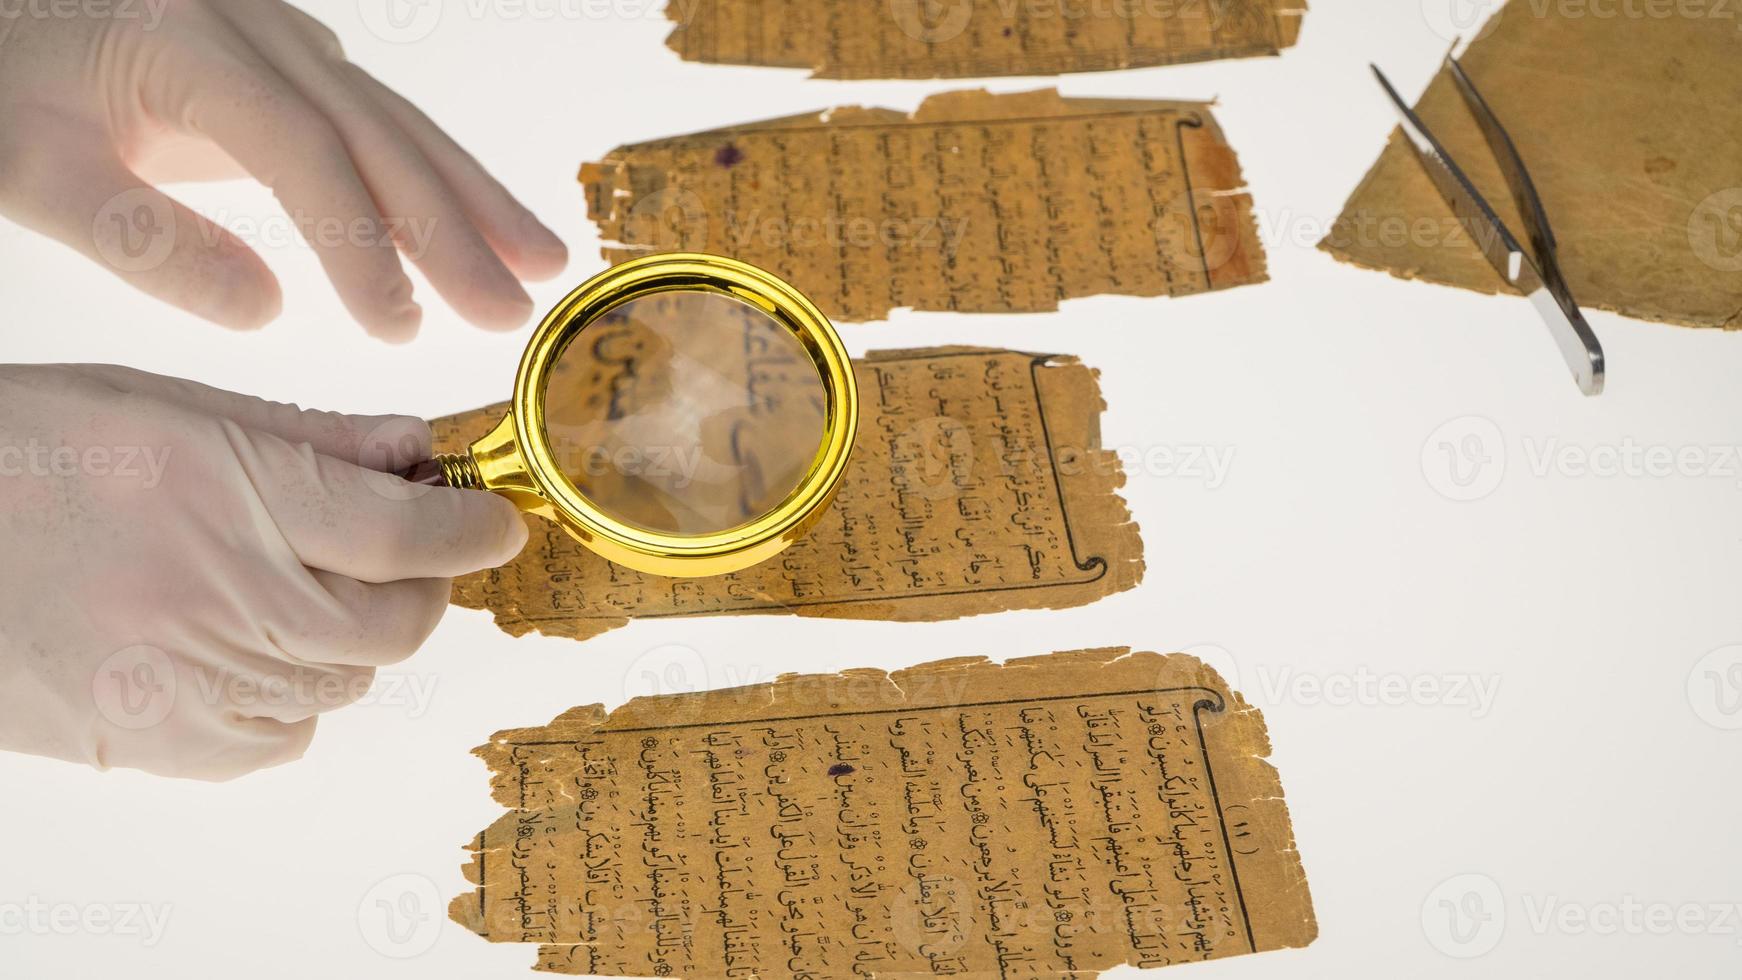 un ricercatore studia la scrittura araba dal Corano usando una lente d'ingrandimento e un tavolo con una luce. paleografia, lo studio della scrittura araba antica foto